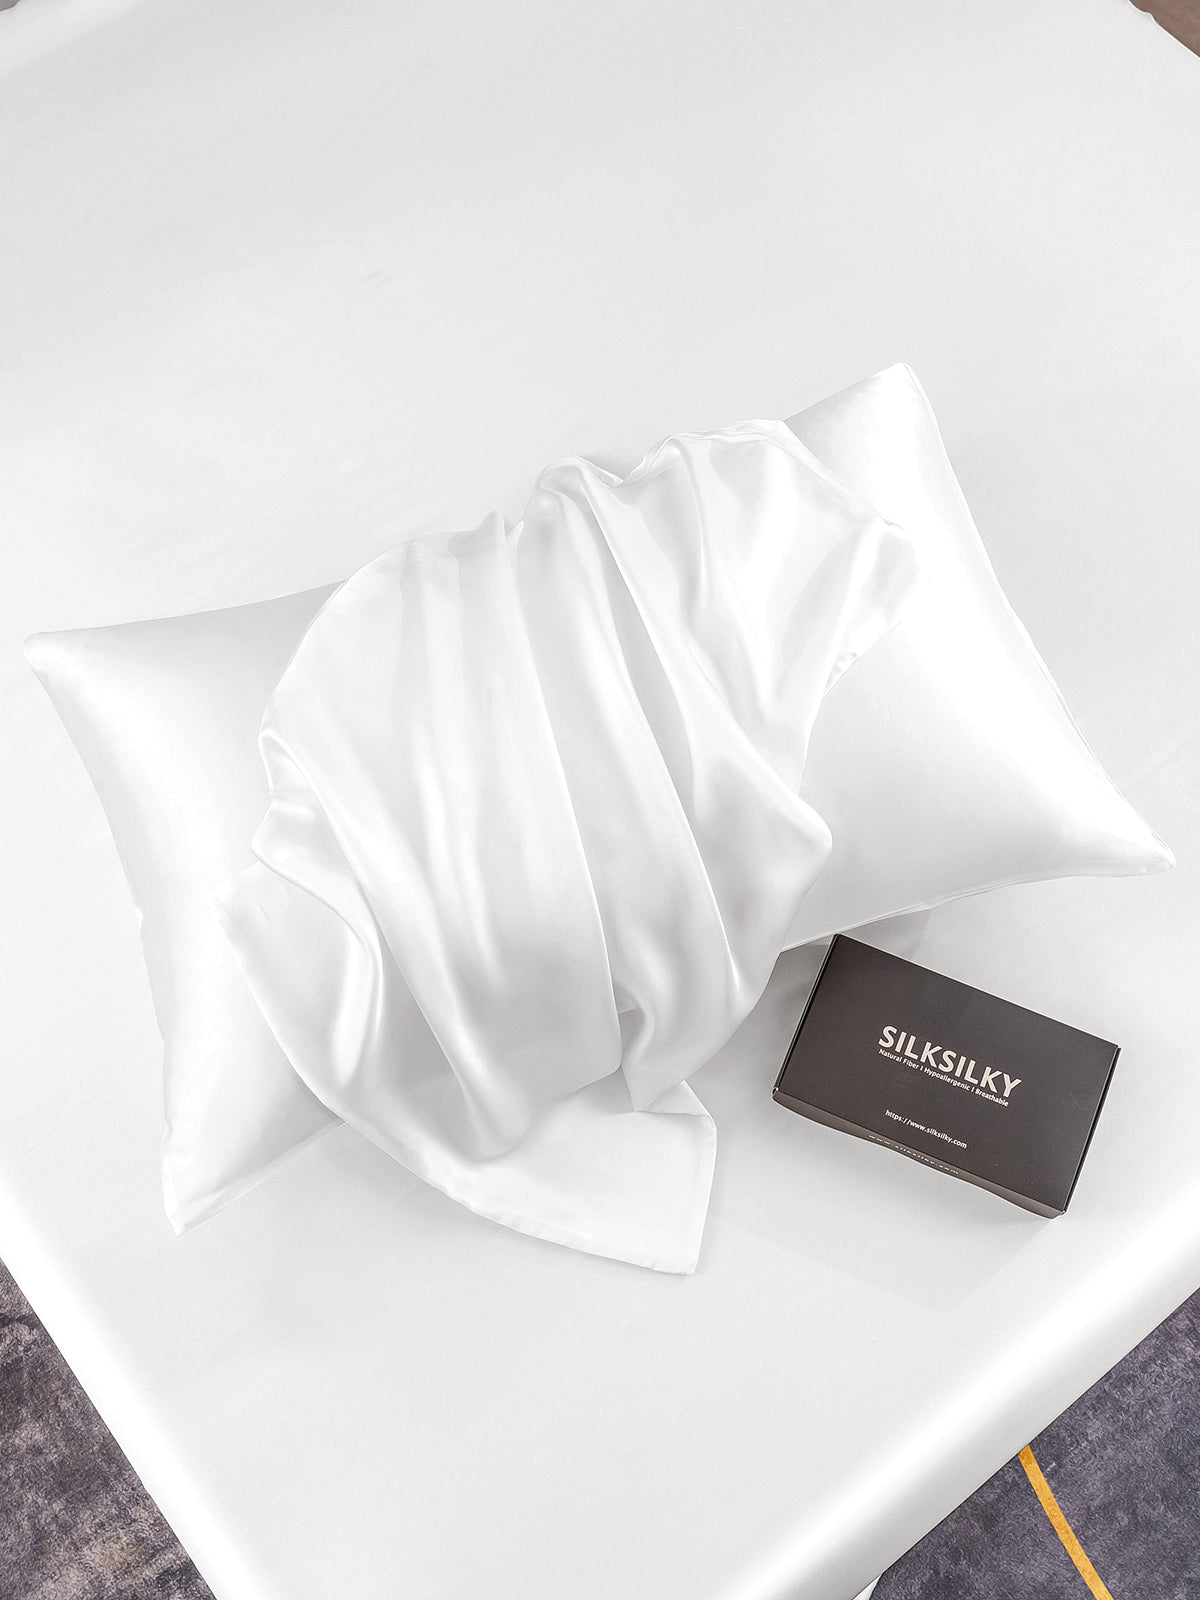 2Pcs 100% Silk 30Momme Pillowcases Bundle- Hidden Zipper